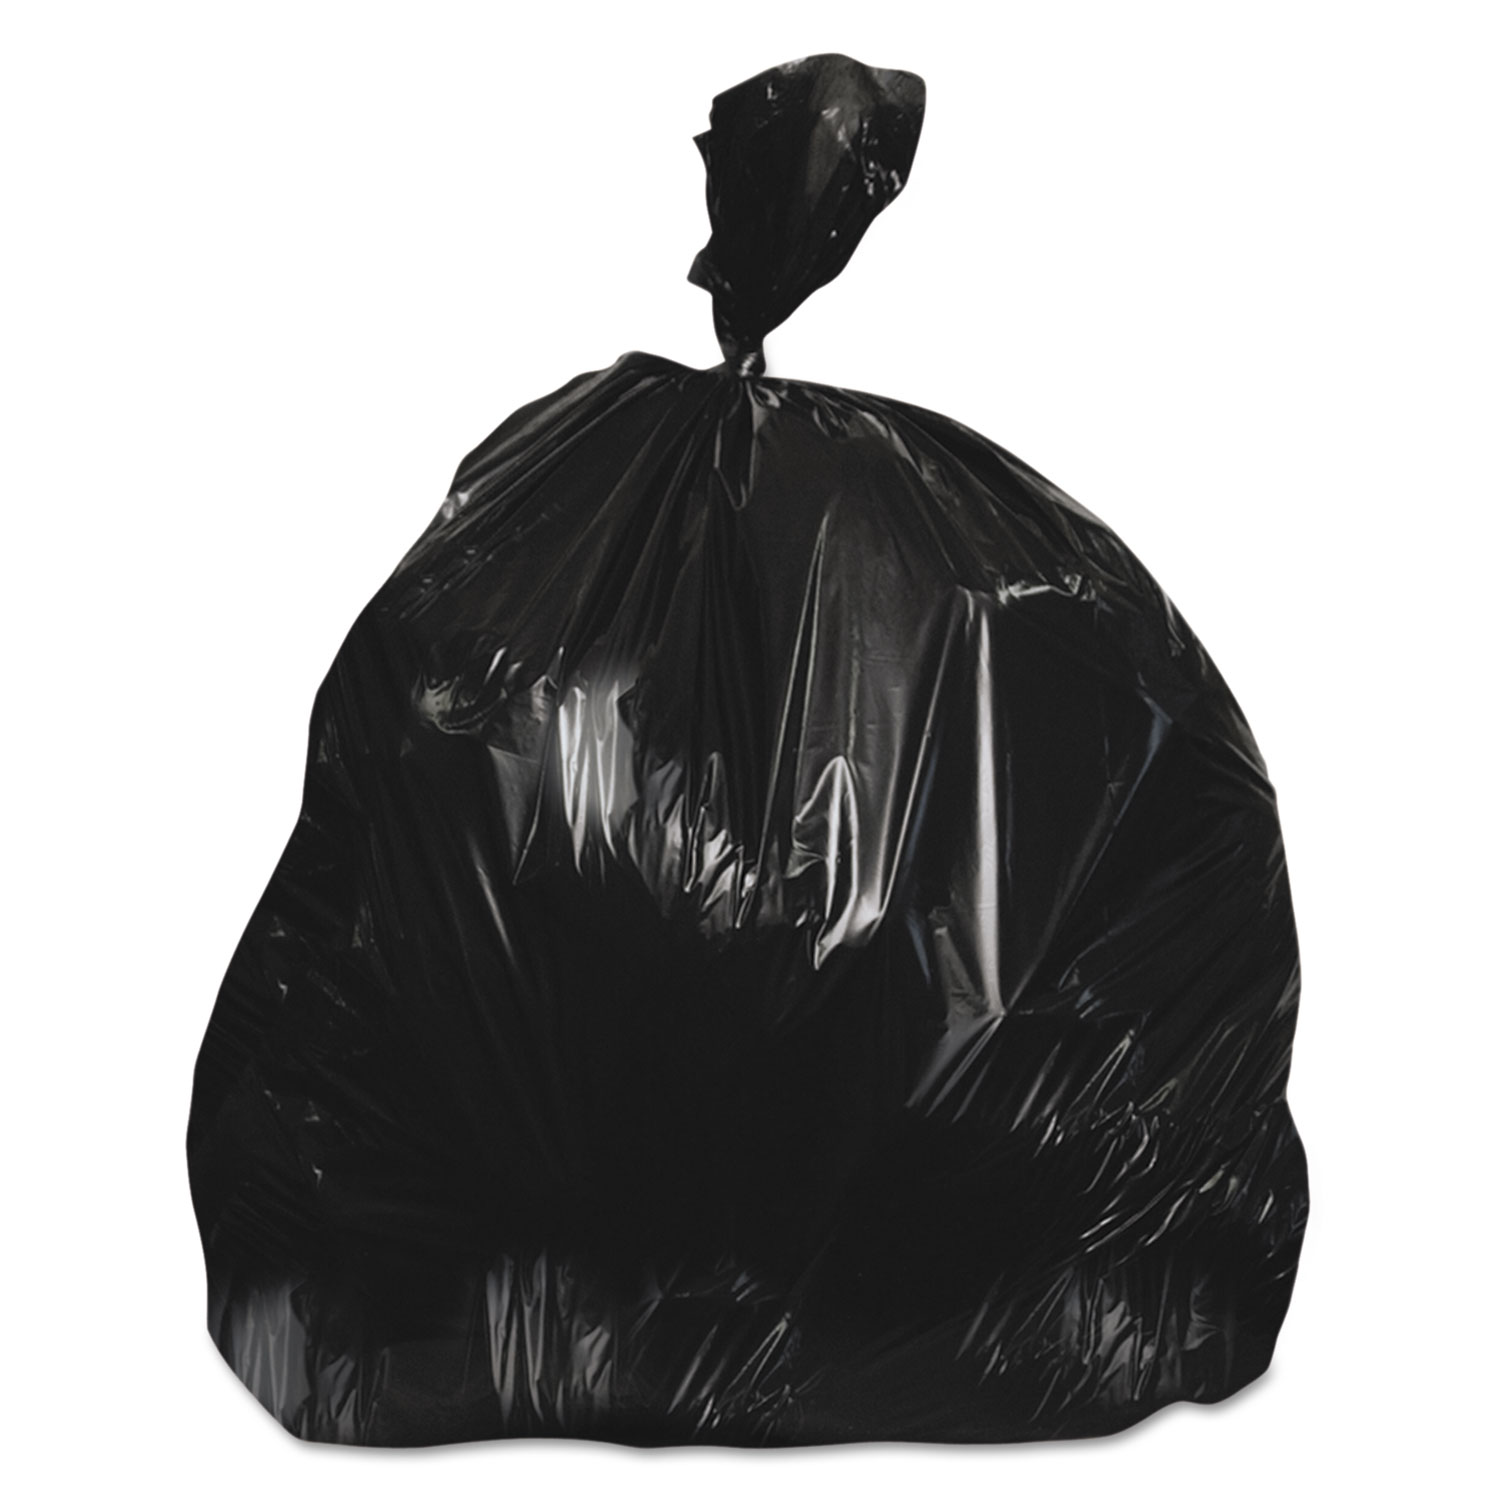 40-45 Gallon Trash Bags 150 per Case